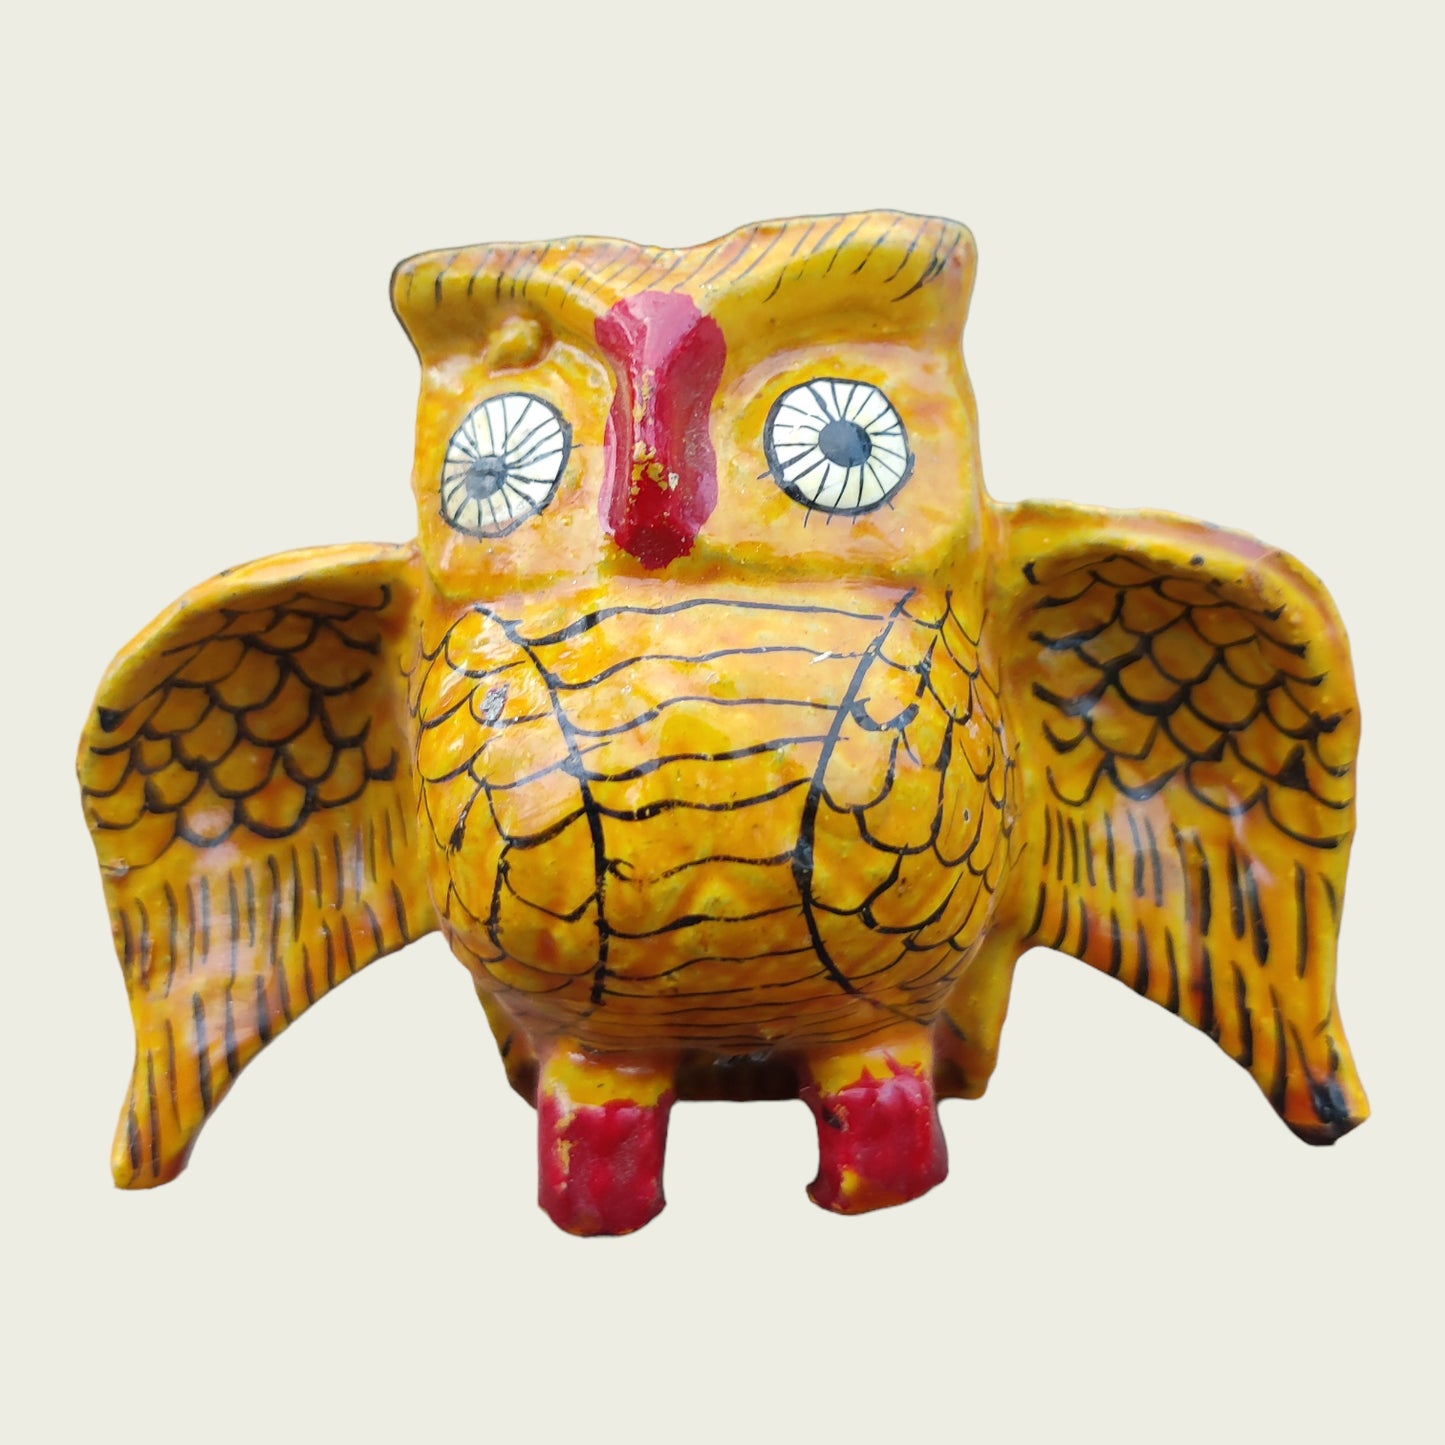 Wooden Owl Incense Holder